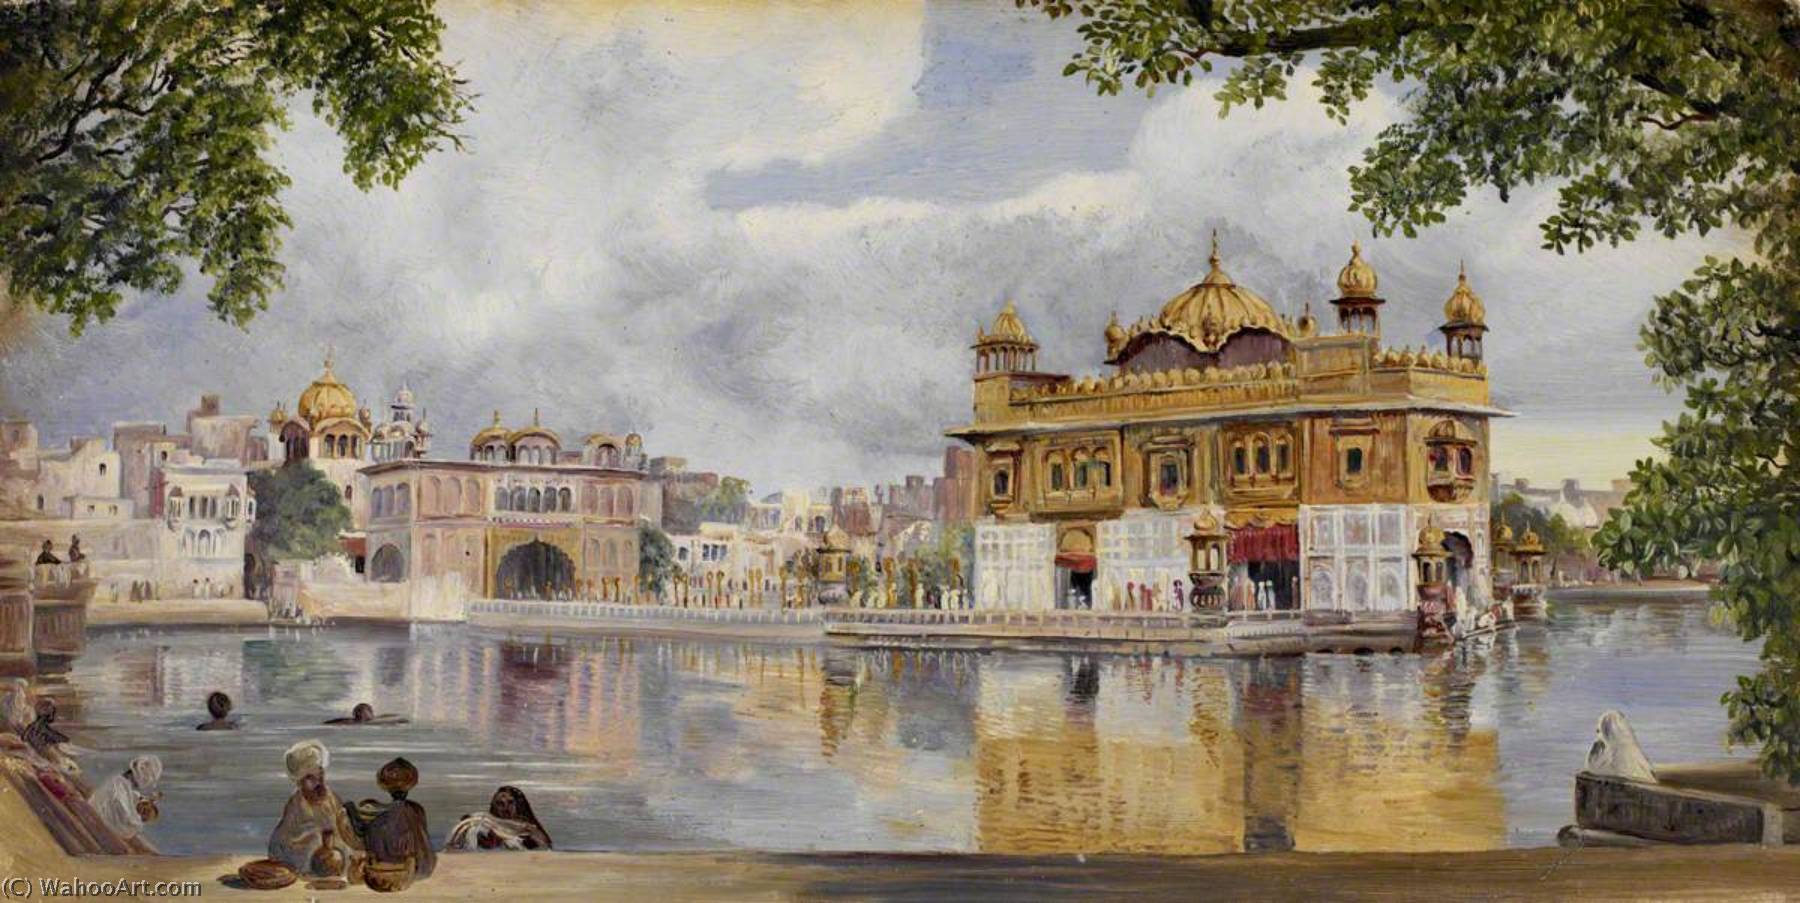 WikiOO.org - Enciclopédia das Belas Artes - Pintura, Arte por Marianne North - 'The Golden Temple, Amritzur, India. 26 May 1878'